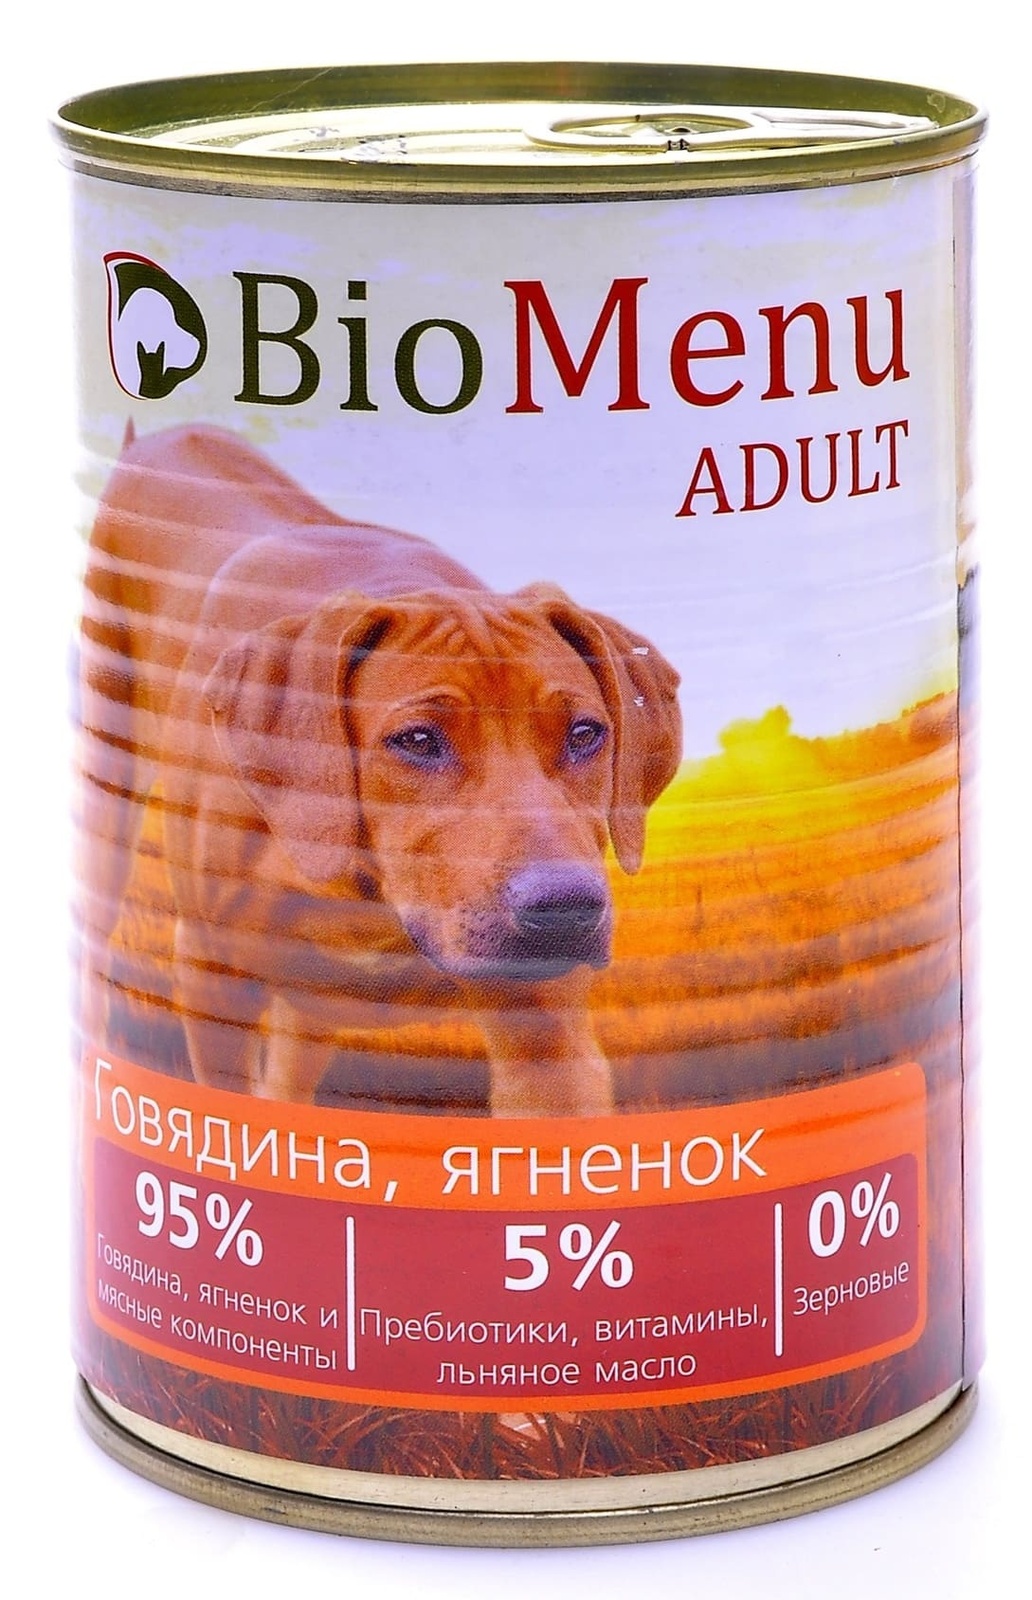 BioMenu BioMenu консервы для собак говядина и ягненок (100 г) biomenu biomenu консервы для собак низкокалорийные с индейкой и коричневым рисом 100 г